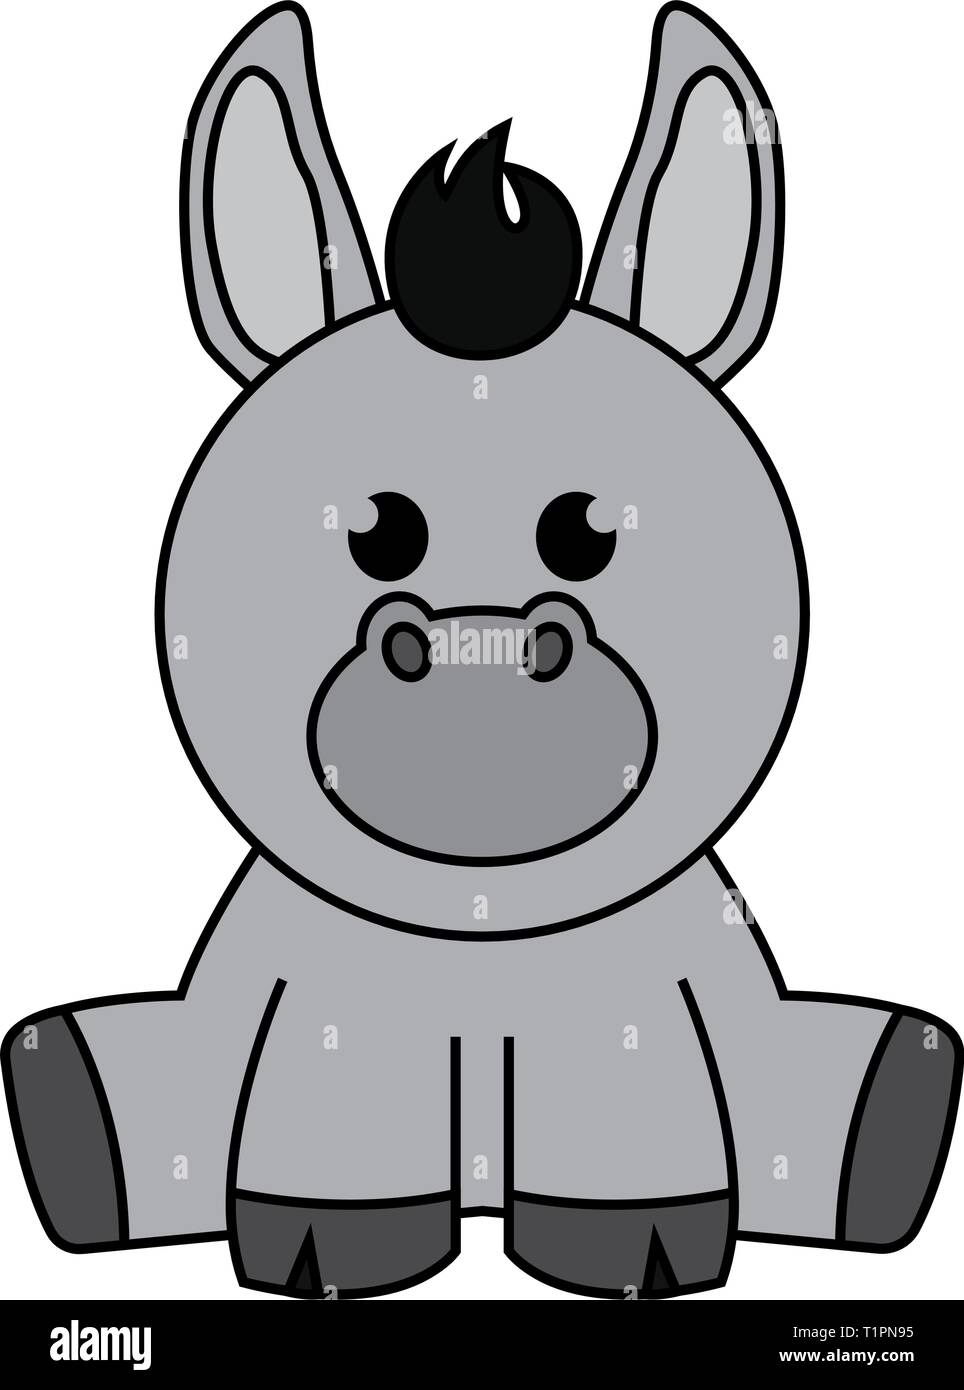 Sad Donkey Vector Images (56)